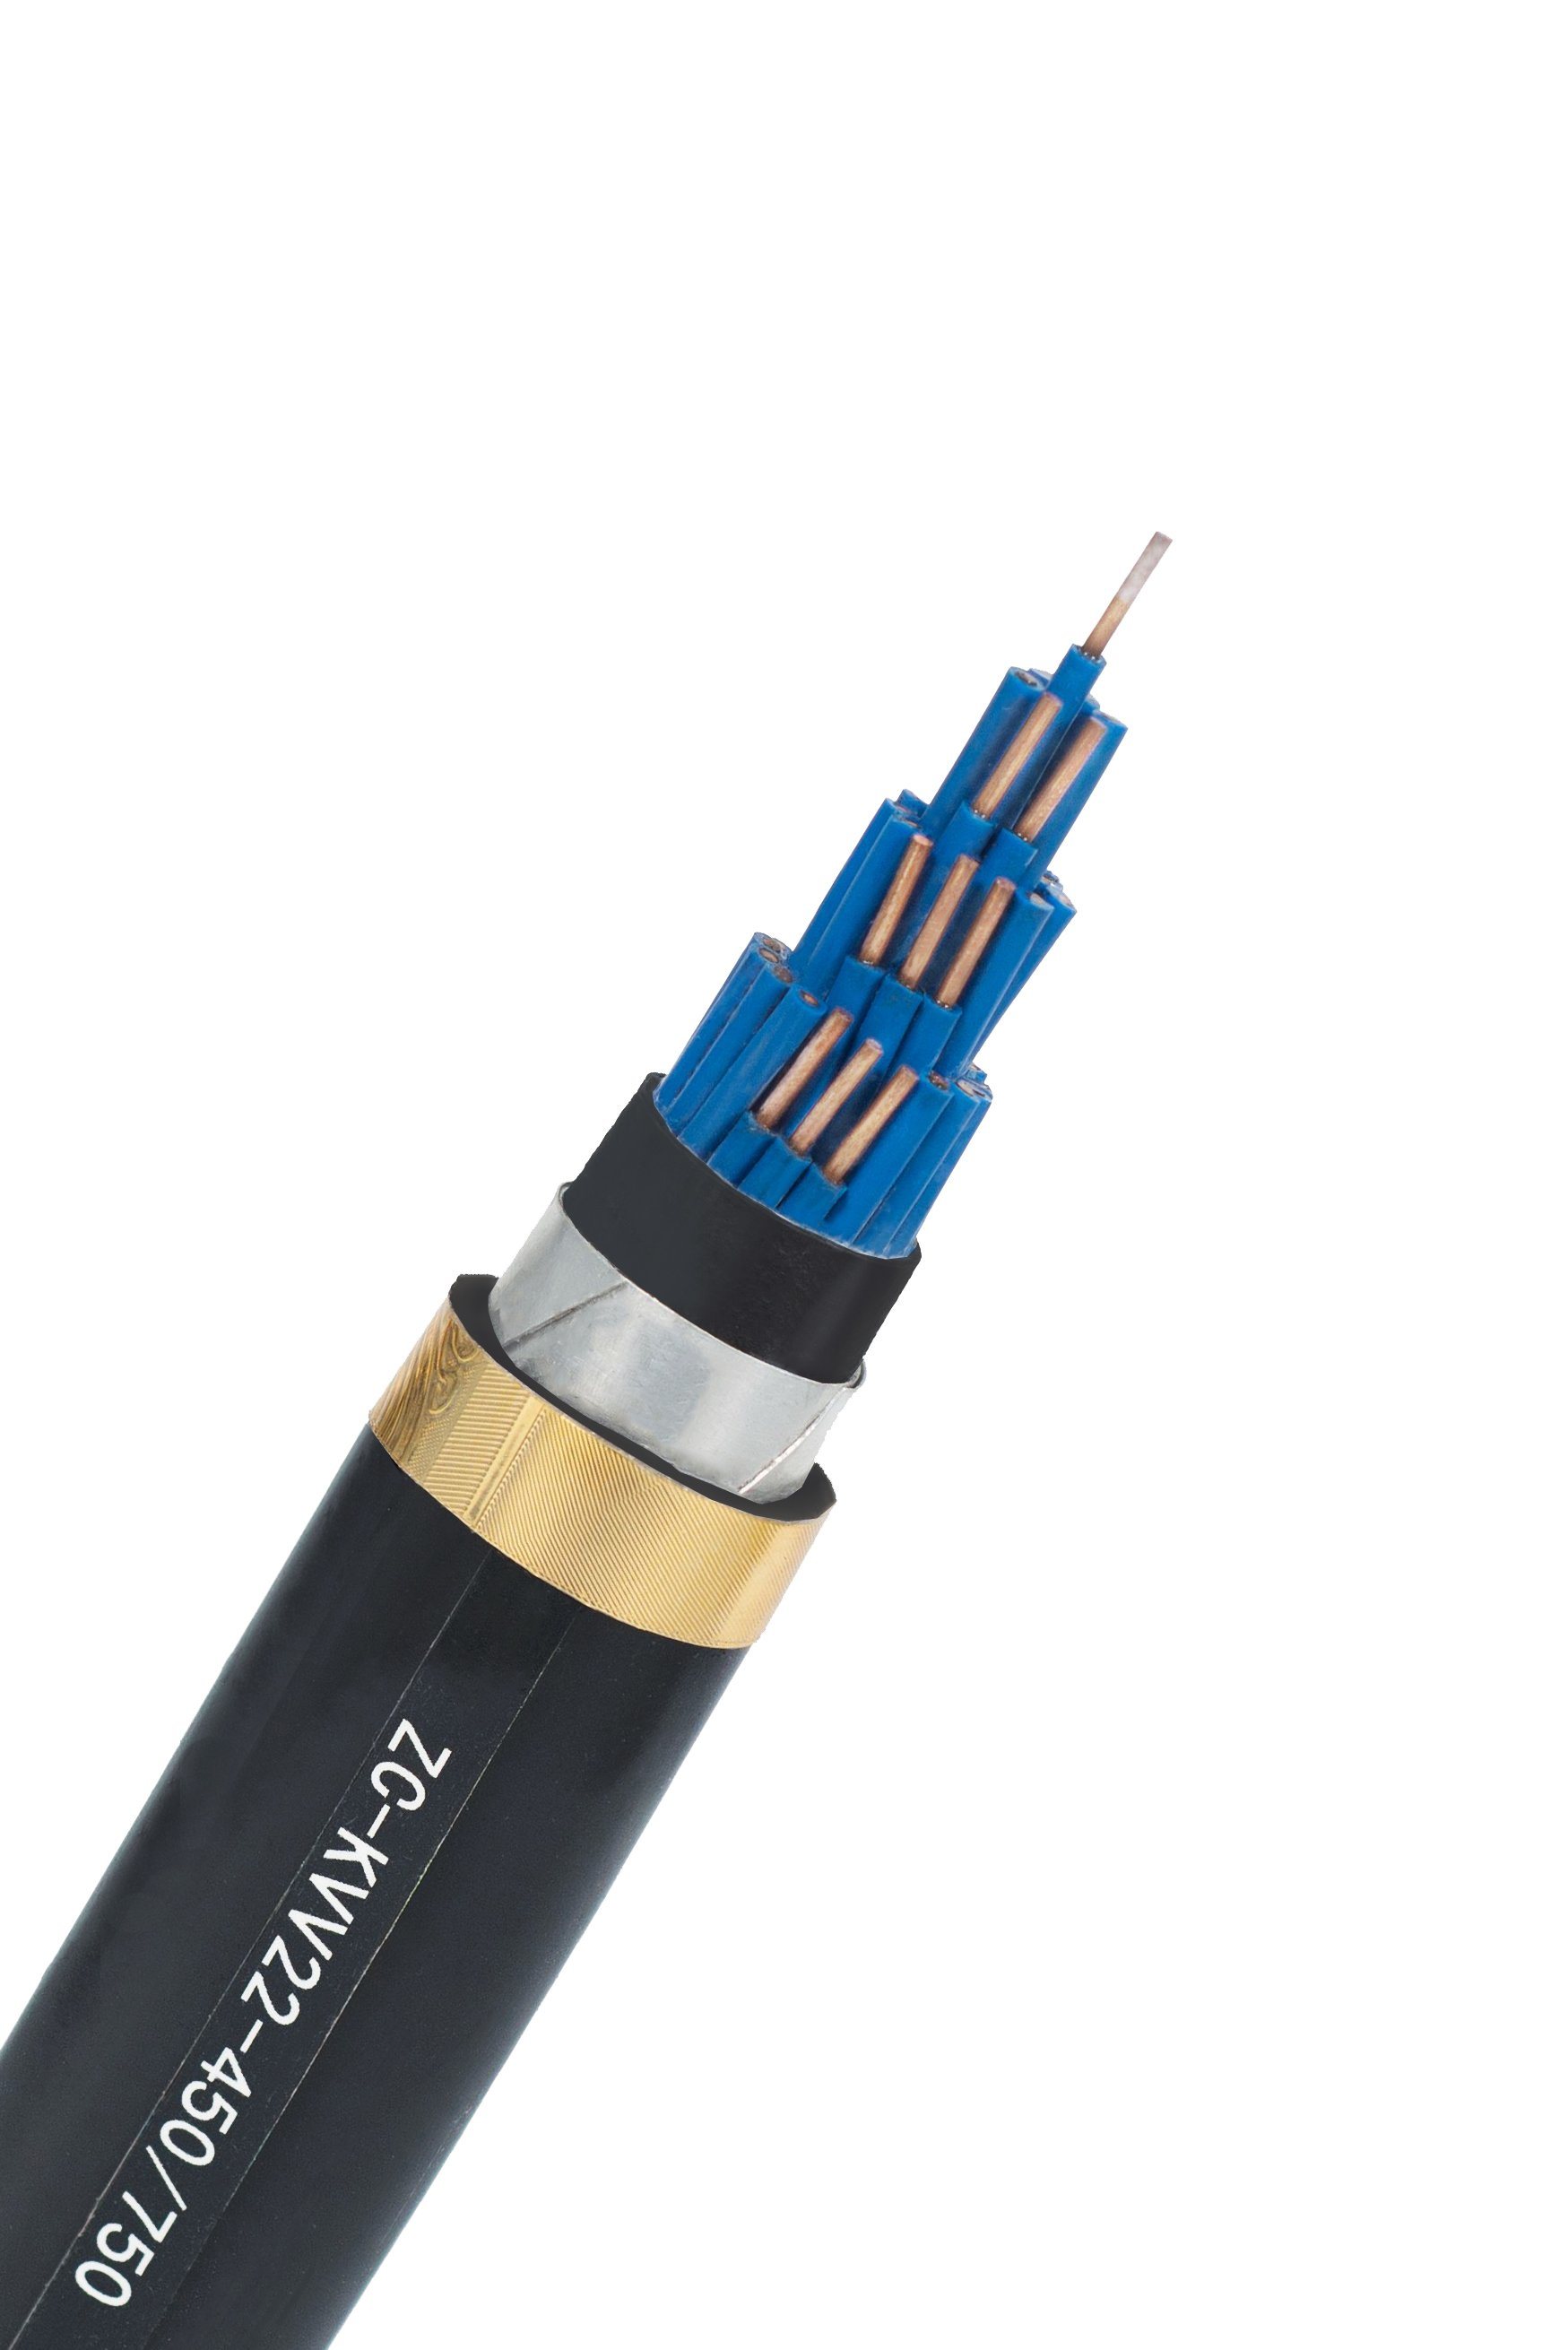 
                Câble de données flexible de norme européenne Liyy 2 3 4 5 6 7 8 10 noyau 0.3 0.75 1.5 Sq mm Câble de commande de signal de communication électronique et électrique
            